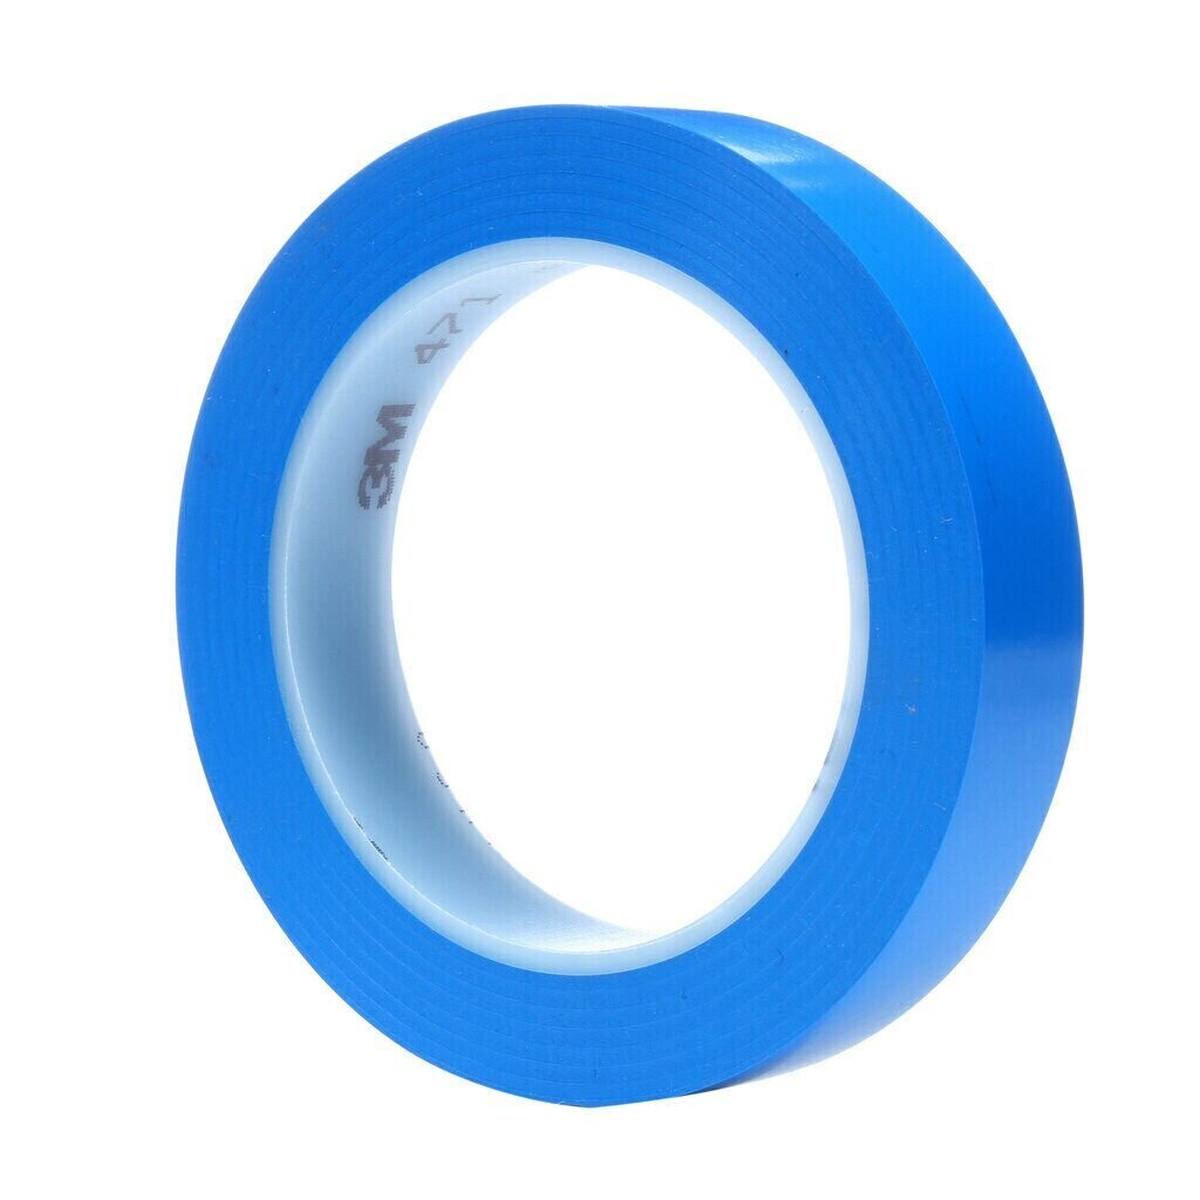 3M ruban adhésif en PVC souple 471 F, bleu, 19 mm x 33 m, 0,13 mm